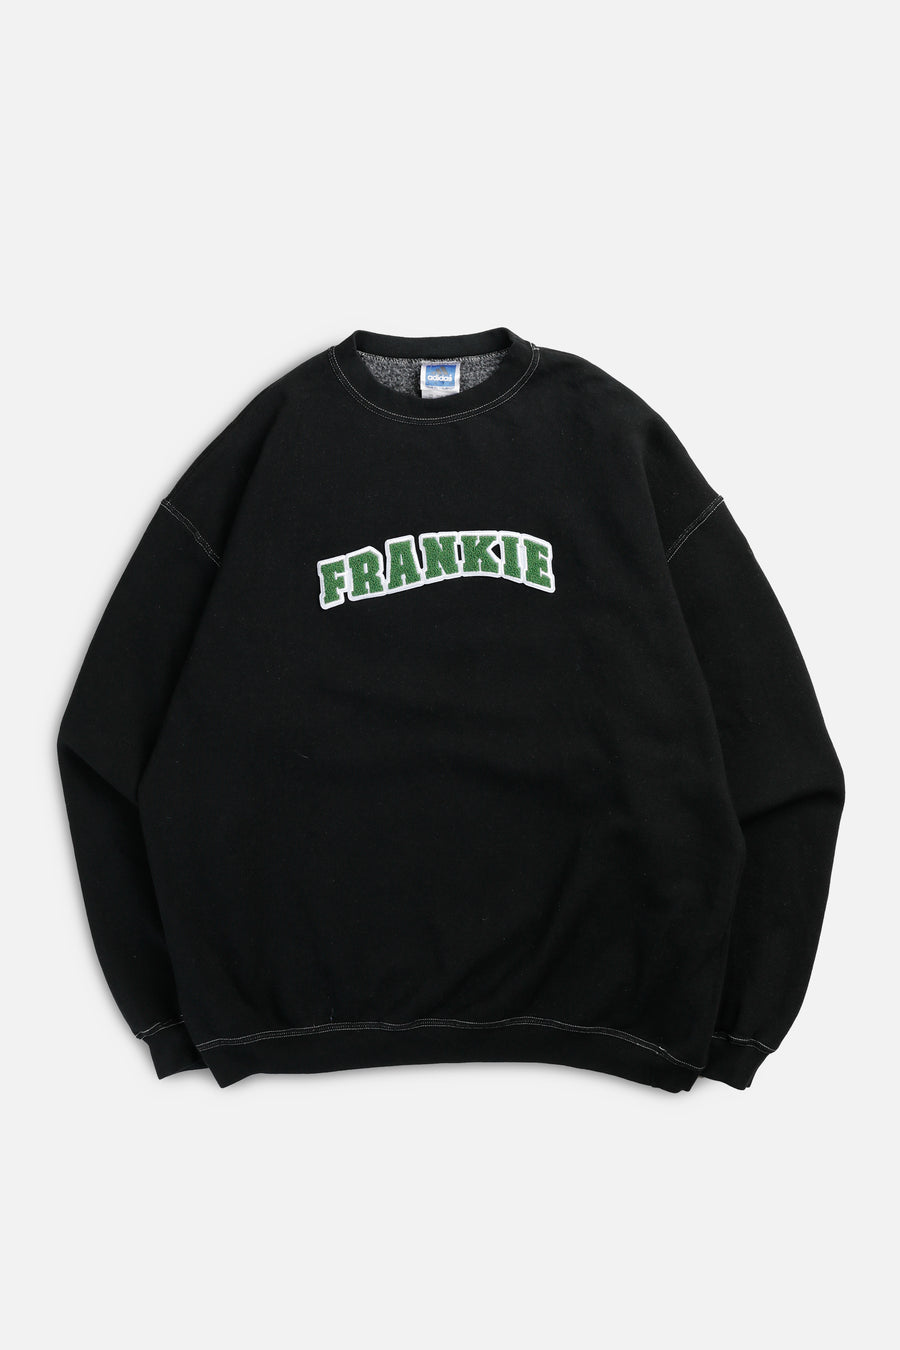 Frankie Upcycled Varsity Sweatshirt - L, XXL